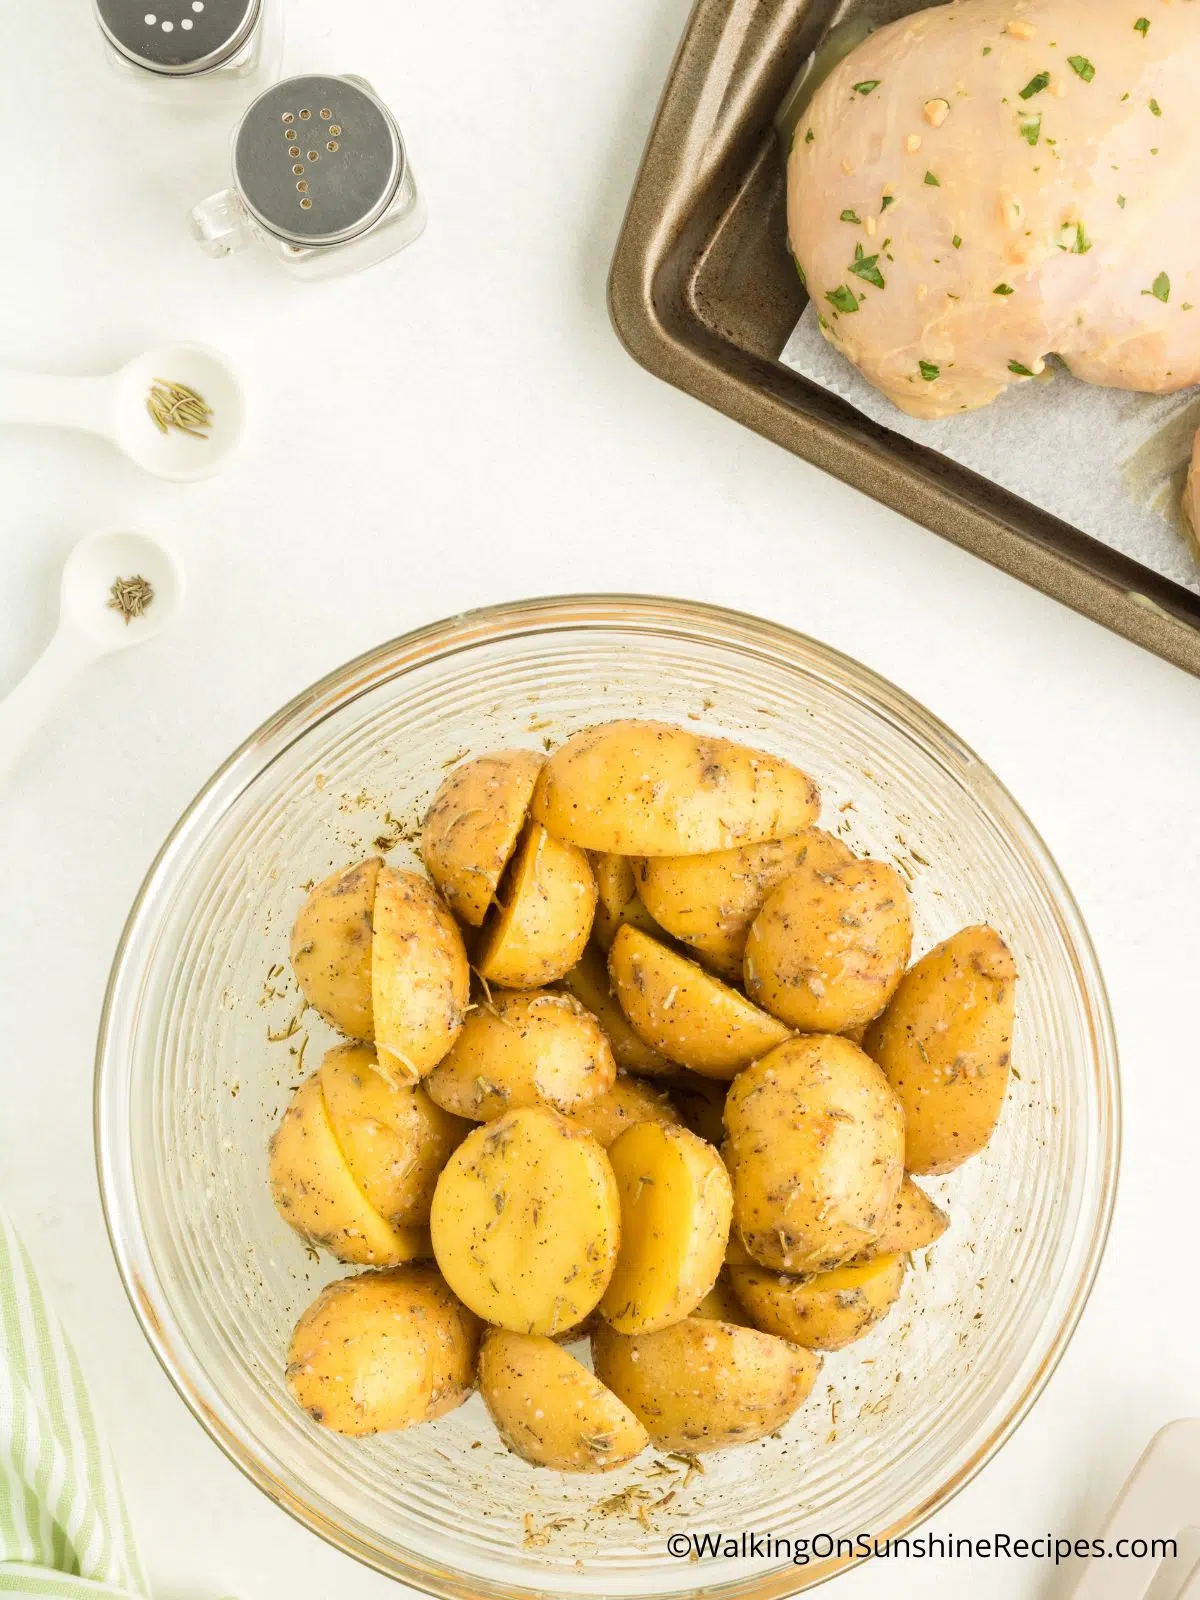 Yukon gold potatoes with seasoning in bowl.